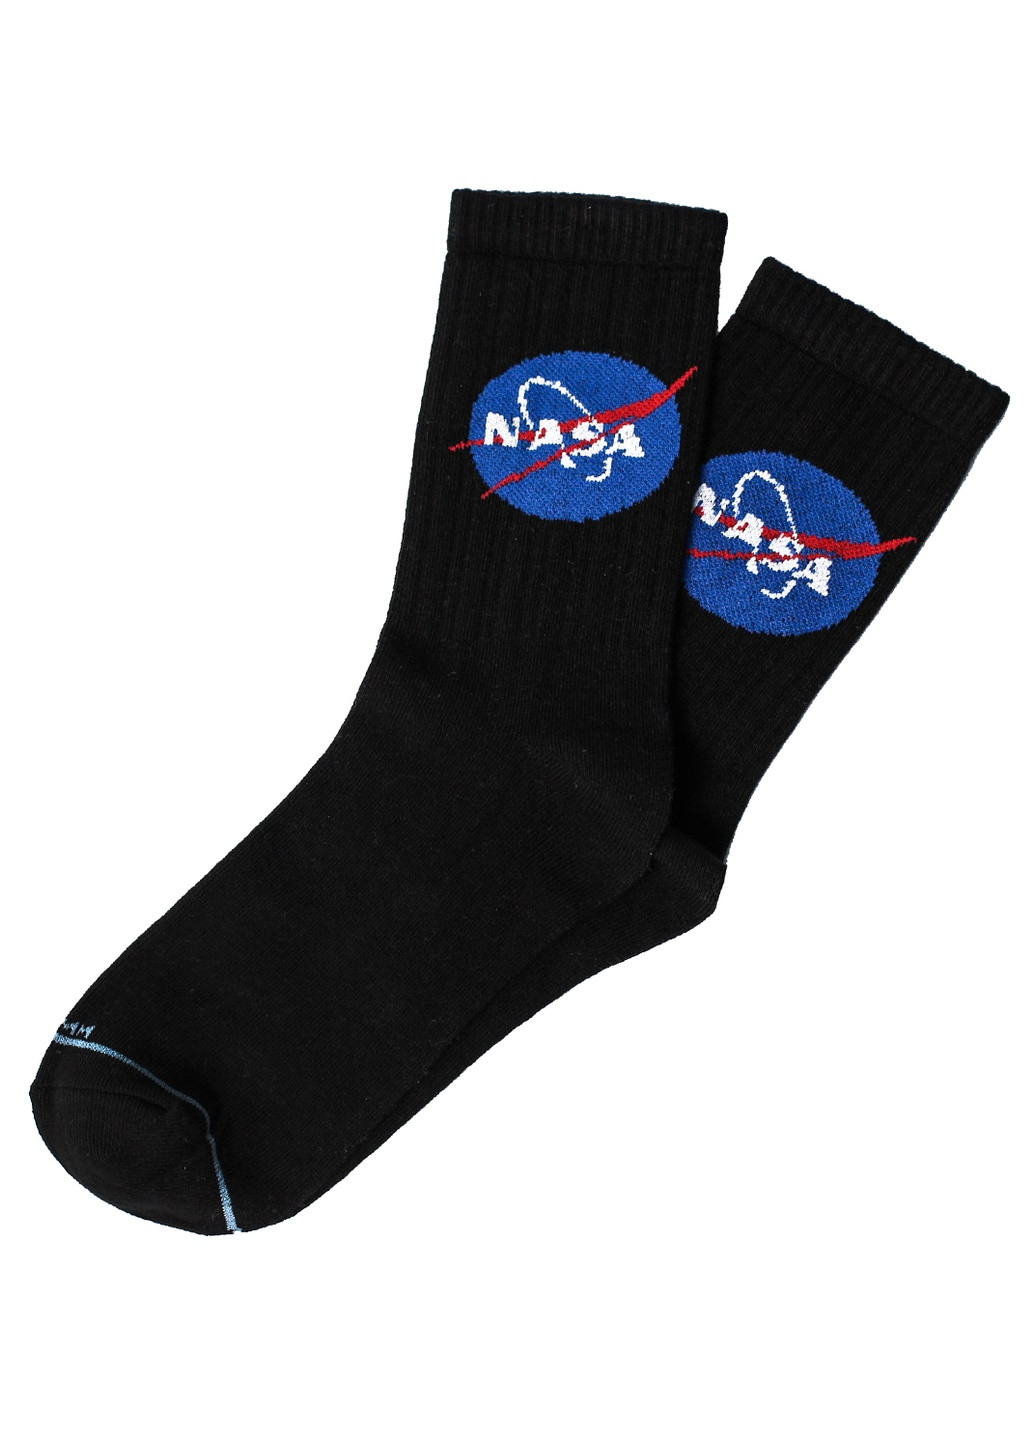 Женские носки Premium NASA LOMM высокие (211081876)